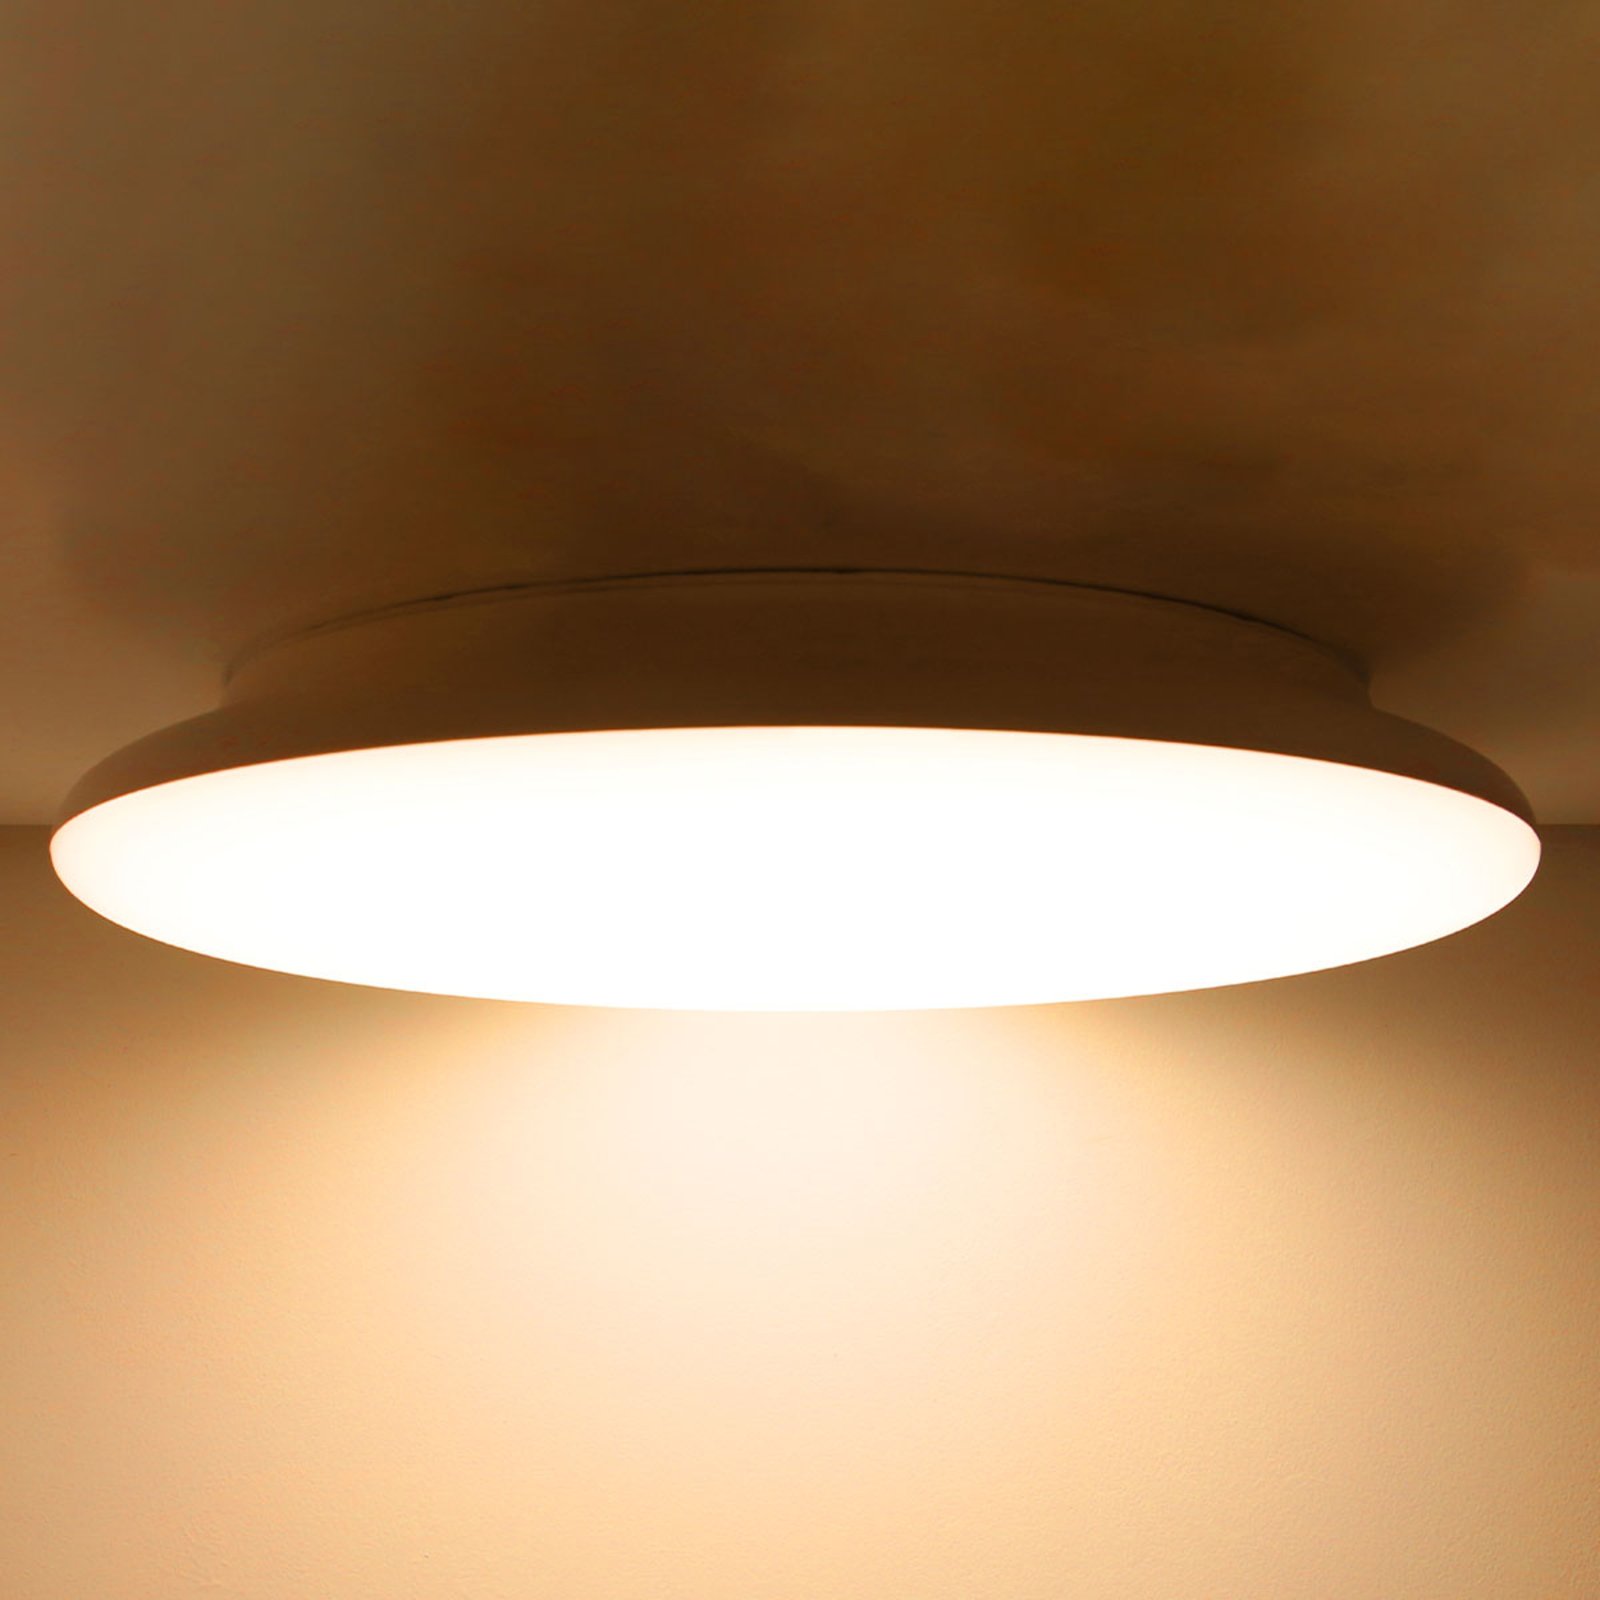 Φωτιστικό οροφής SLC LED με δυνατότητα ρύθμισης φωτισμού IP54 Ø 40 cm